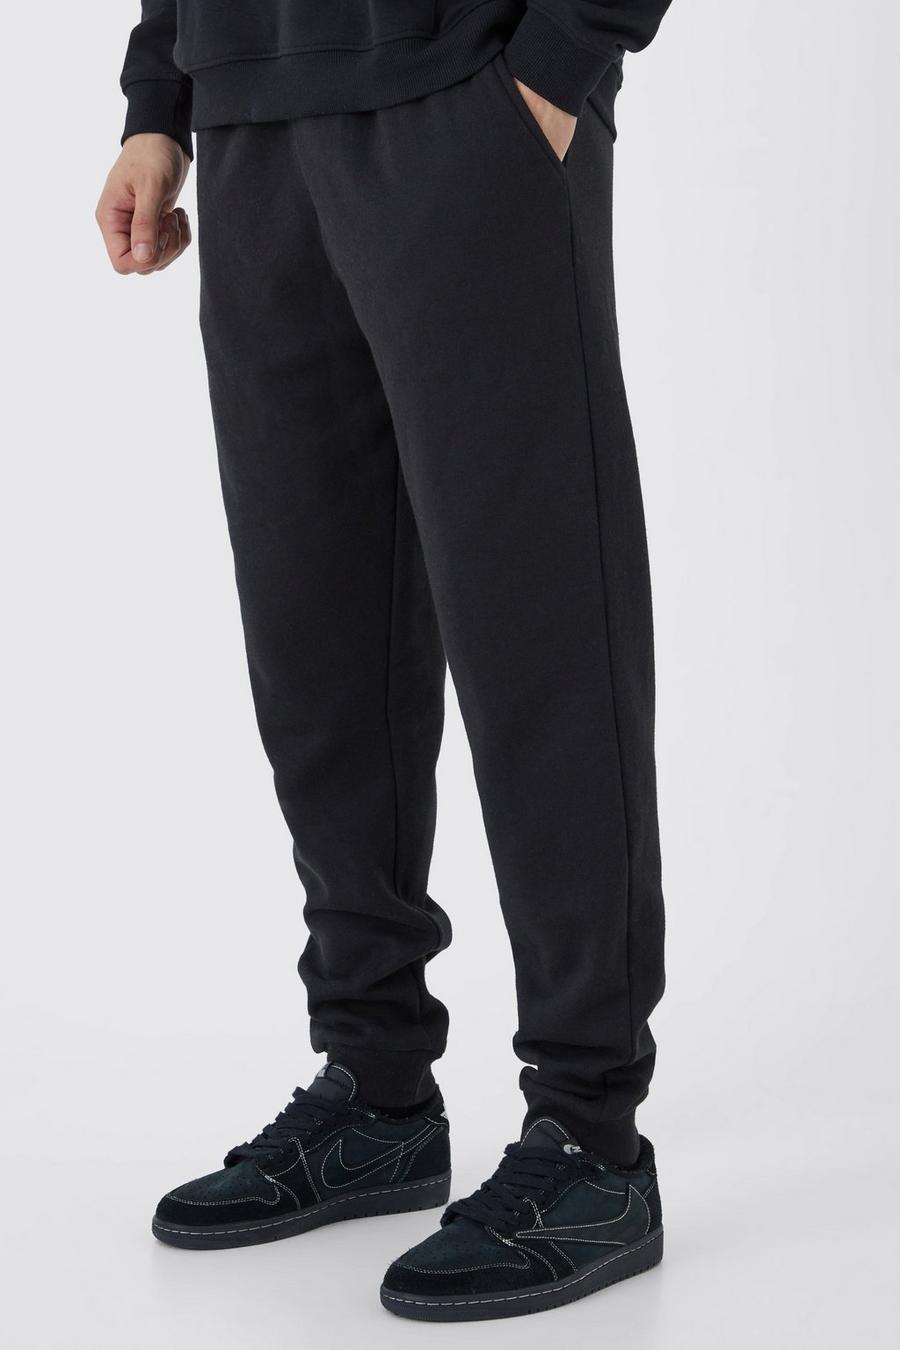 Pantaloni tuta Tall Basic Core Fit, Black